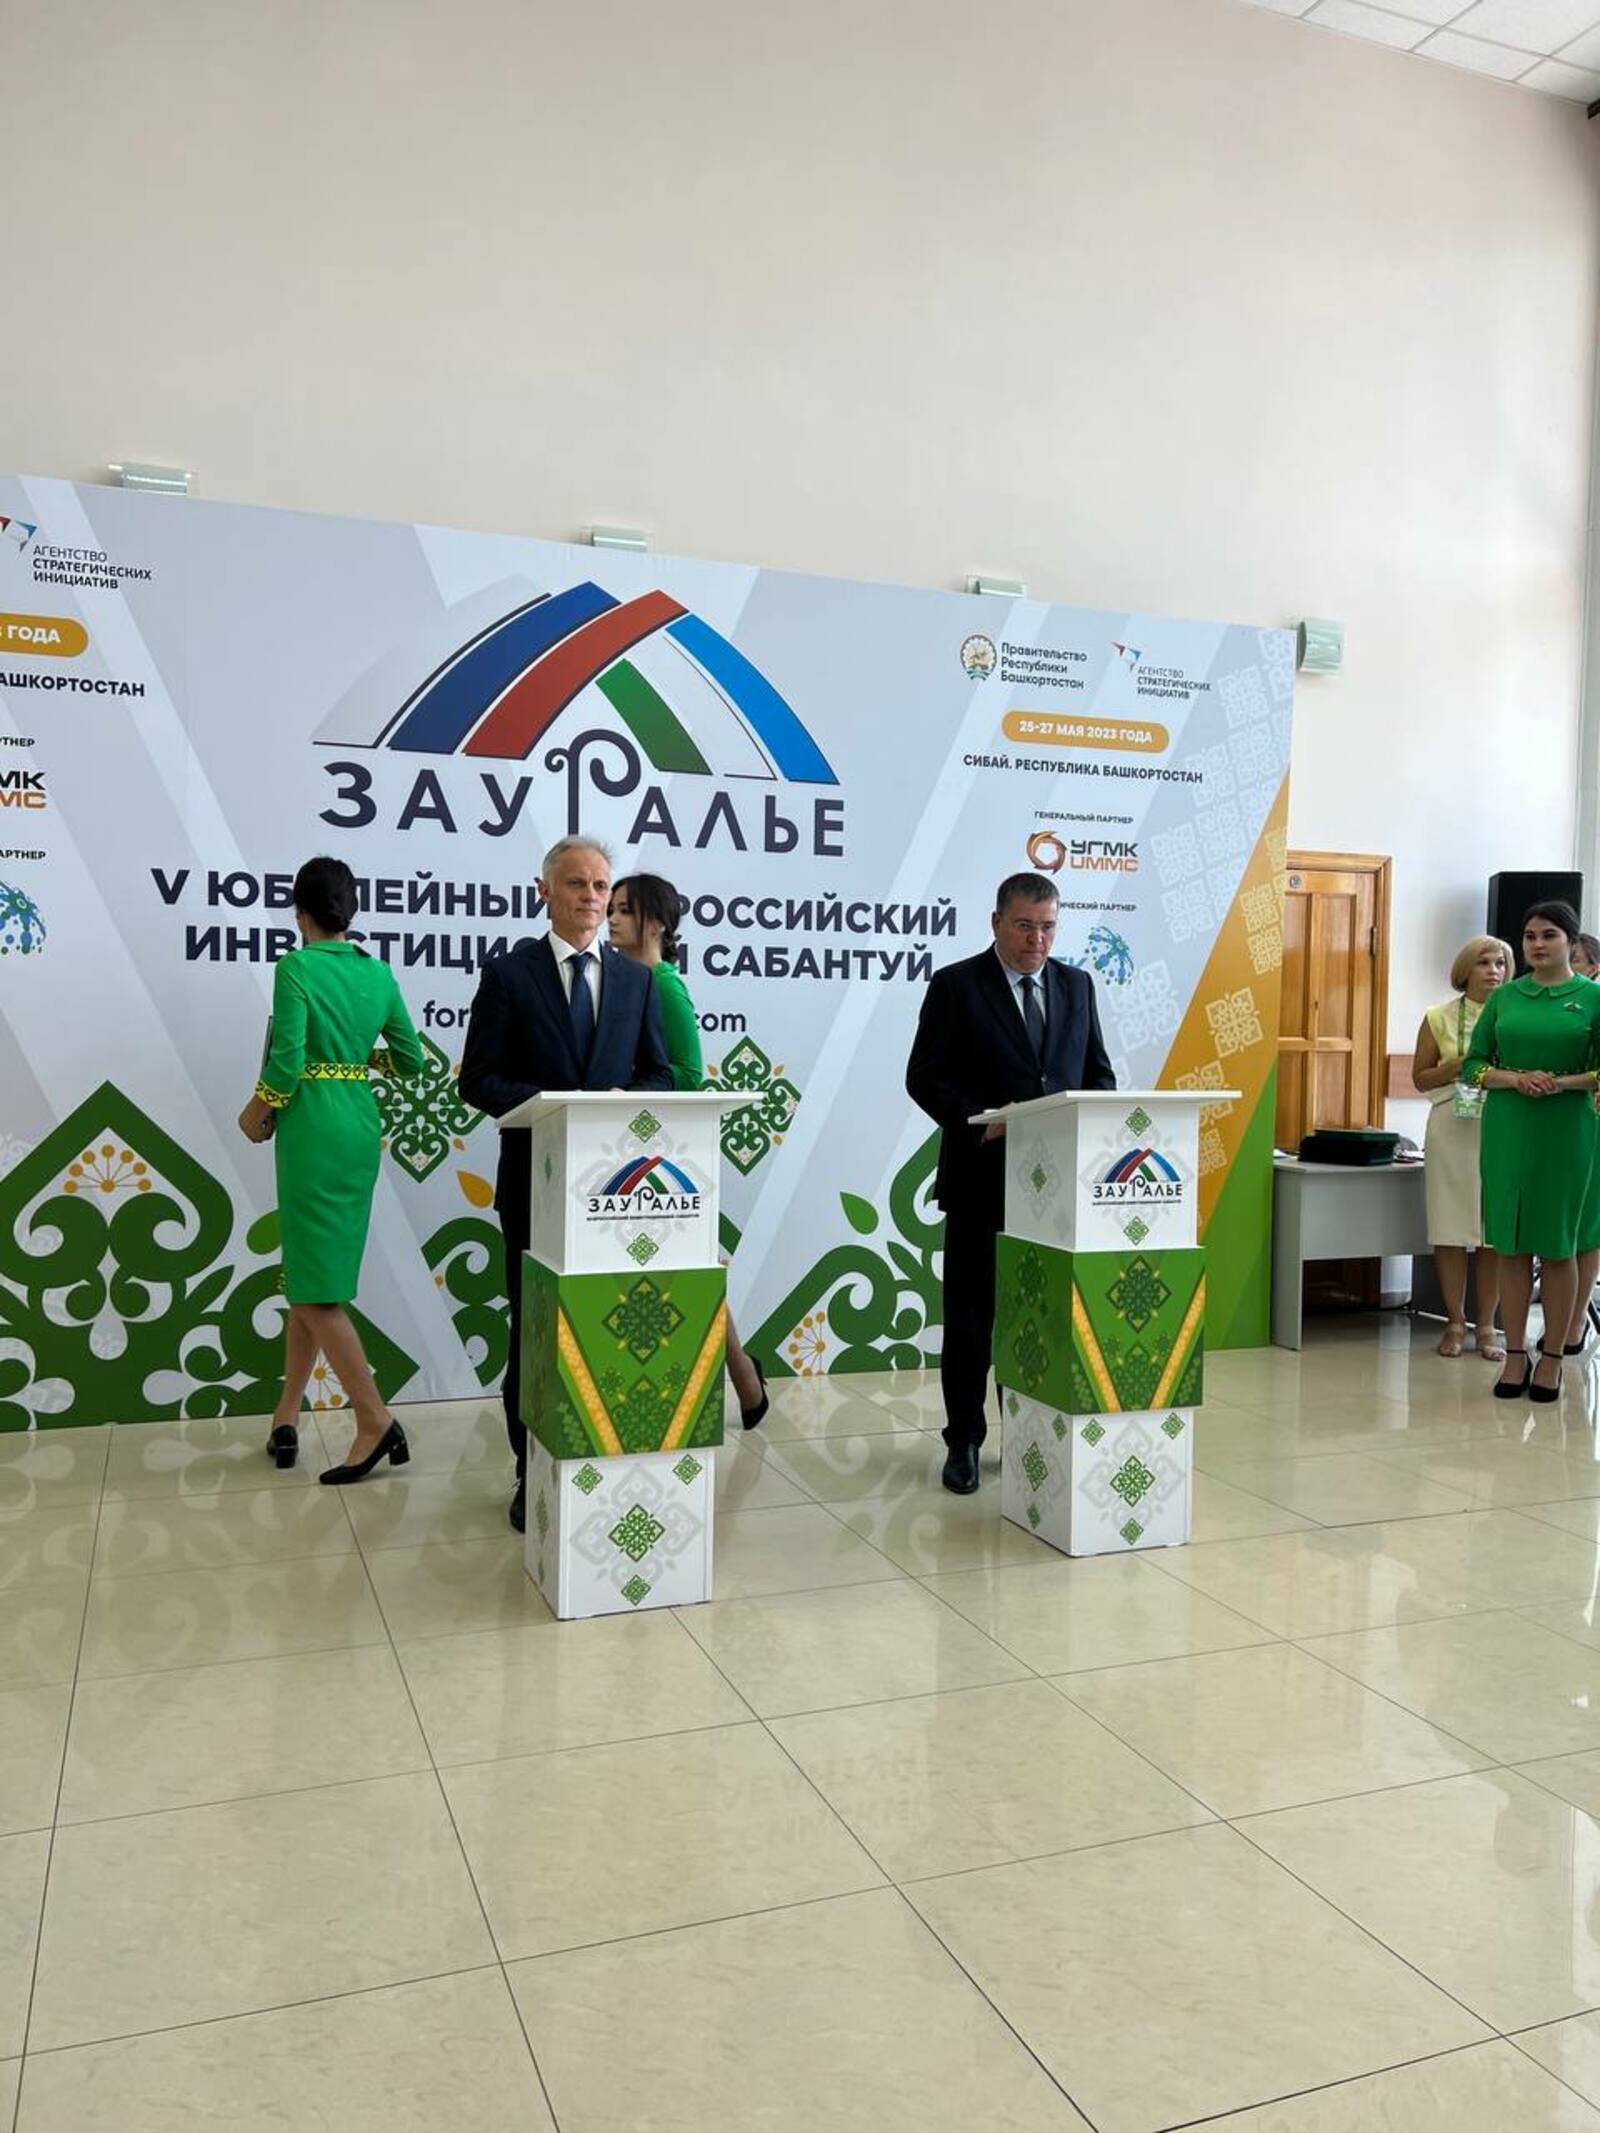 В Башкирии на  инвестсабантуе «Зауралье» подписано соглашение о строительстве новой железной дороги «Сибай – Новорудное»